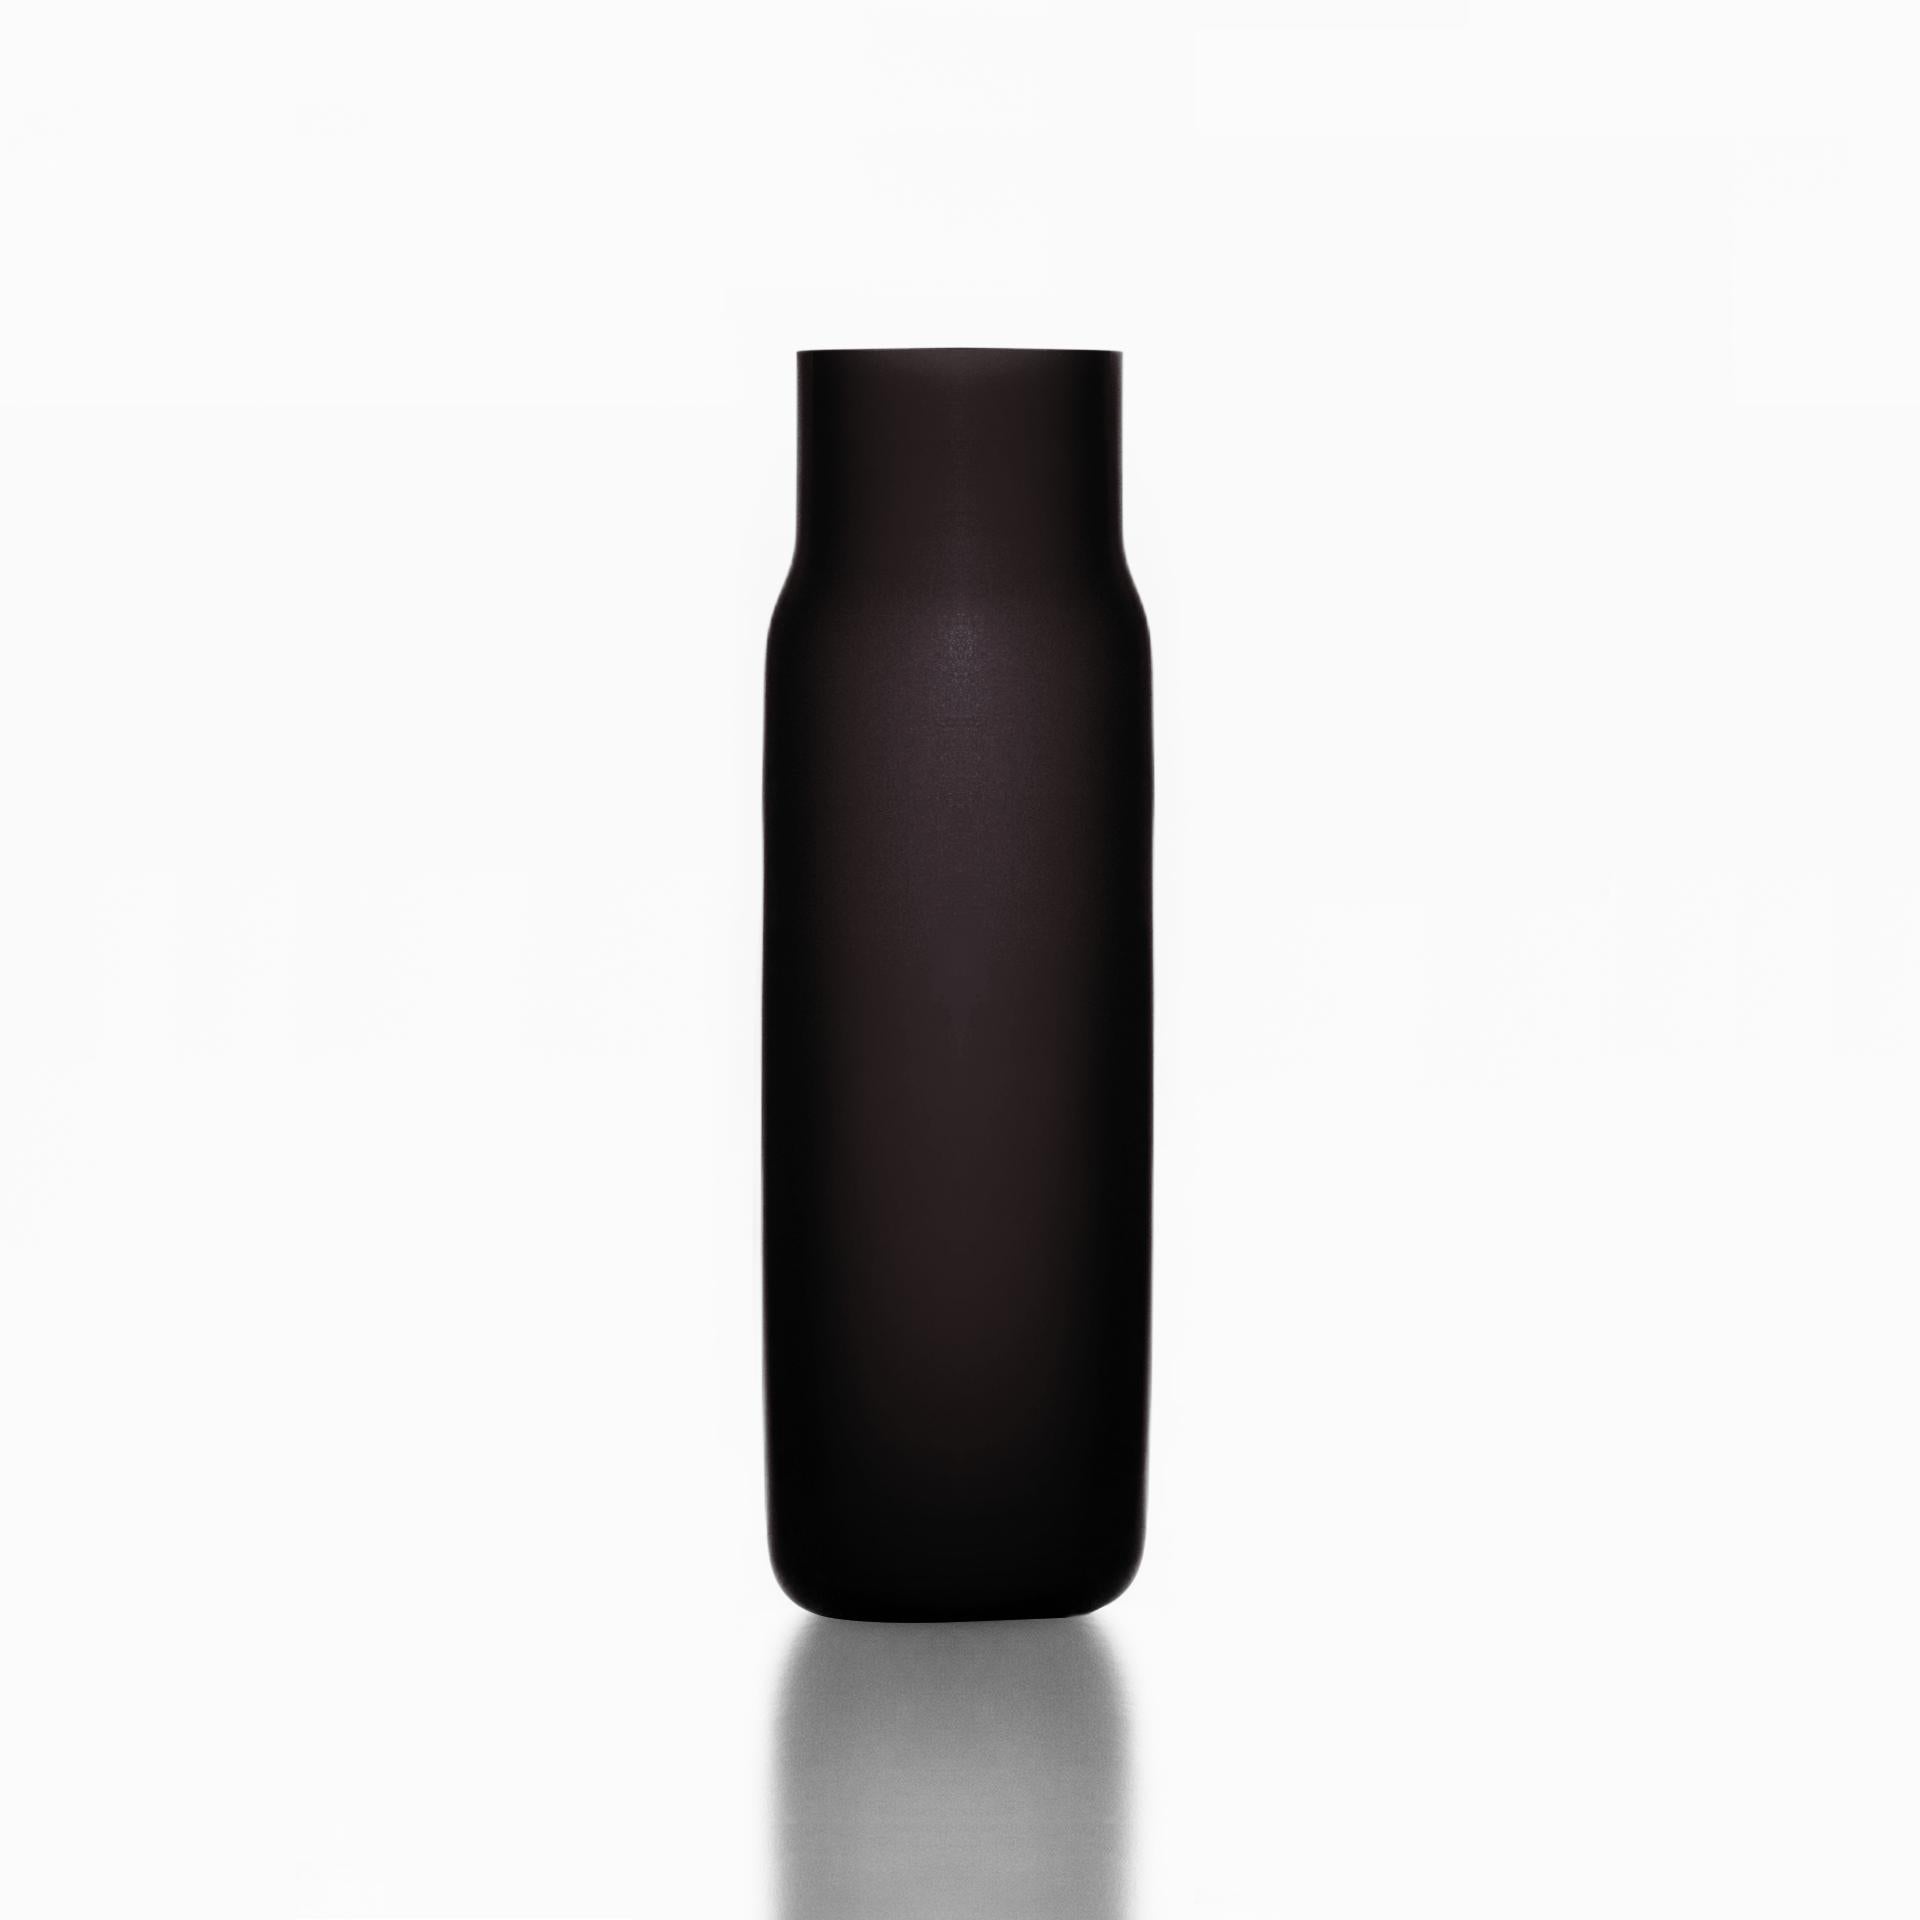 Grand vase en bandaska noir mat par Dechem Studio.
Dimensions : D 9 x H 31 cm.
Matériaux : verre.
Disponible en 4 tailles : D15 x H25/ D18 x H24/ D9 x W31/ D22 x H33 cm.
Disponible en noir, jaune uranium, bleu foncé.

Soufflée à la main dans un